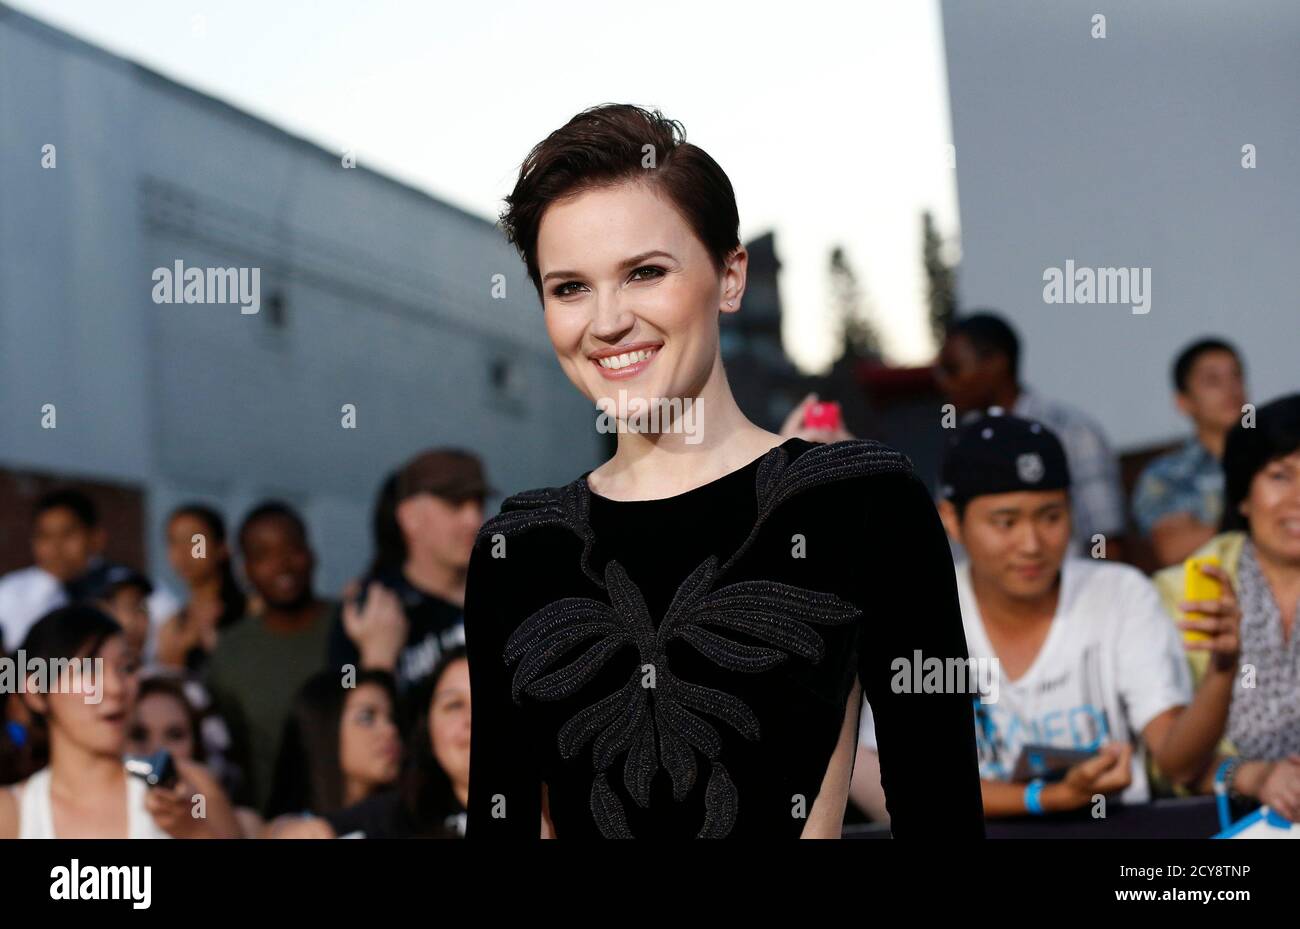 Autor Veronica Roth stellt bei der Premiere von "Divergent" in Los Angeles, Kalifornien 18. März 2014. Der Film beginnt in den USA am 21. März.   REUTERS/Mario Anzuoni (Vereinigte Staaten - Tags: ENTERTAINMENT) Stockfoto